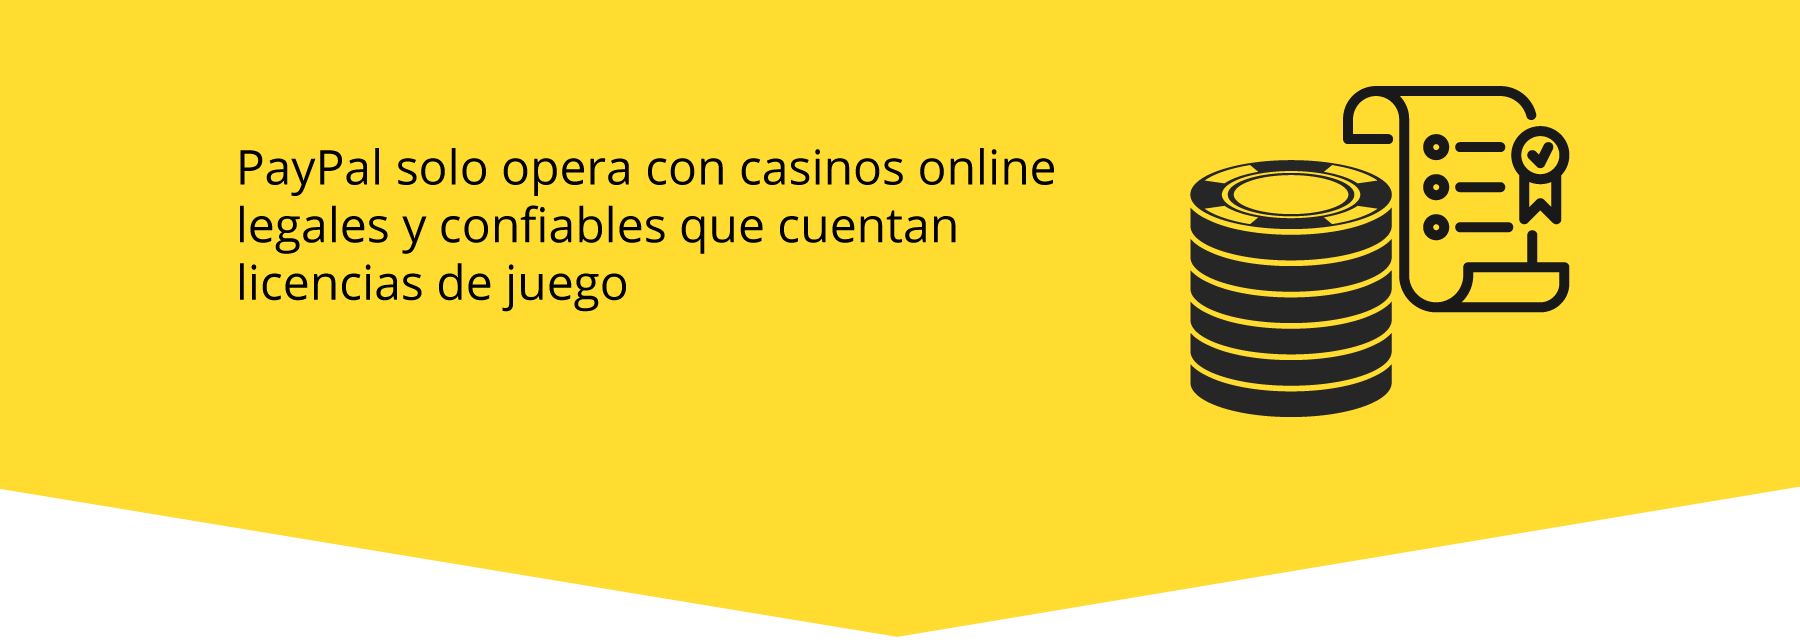 PayPal en casinos online en Latinoamérica